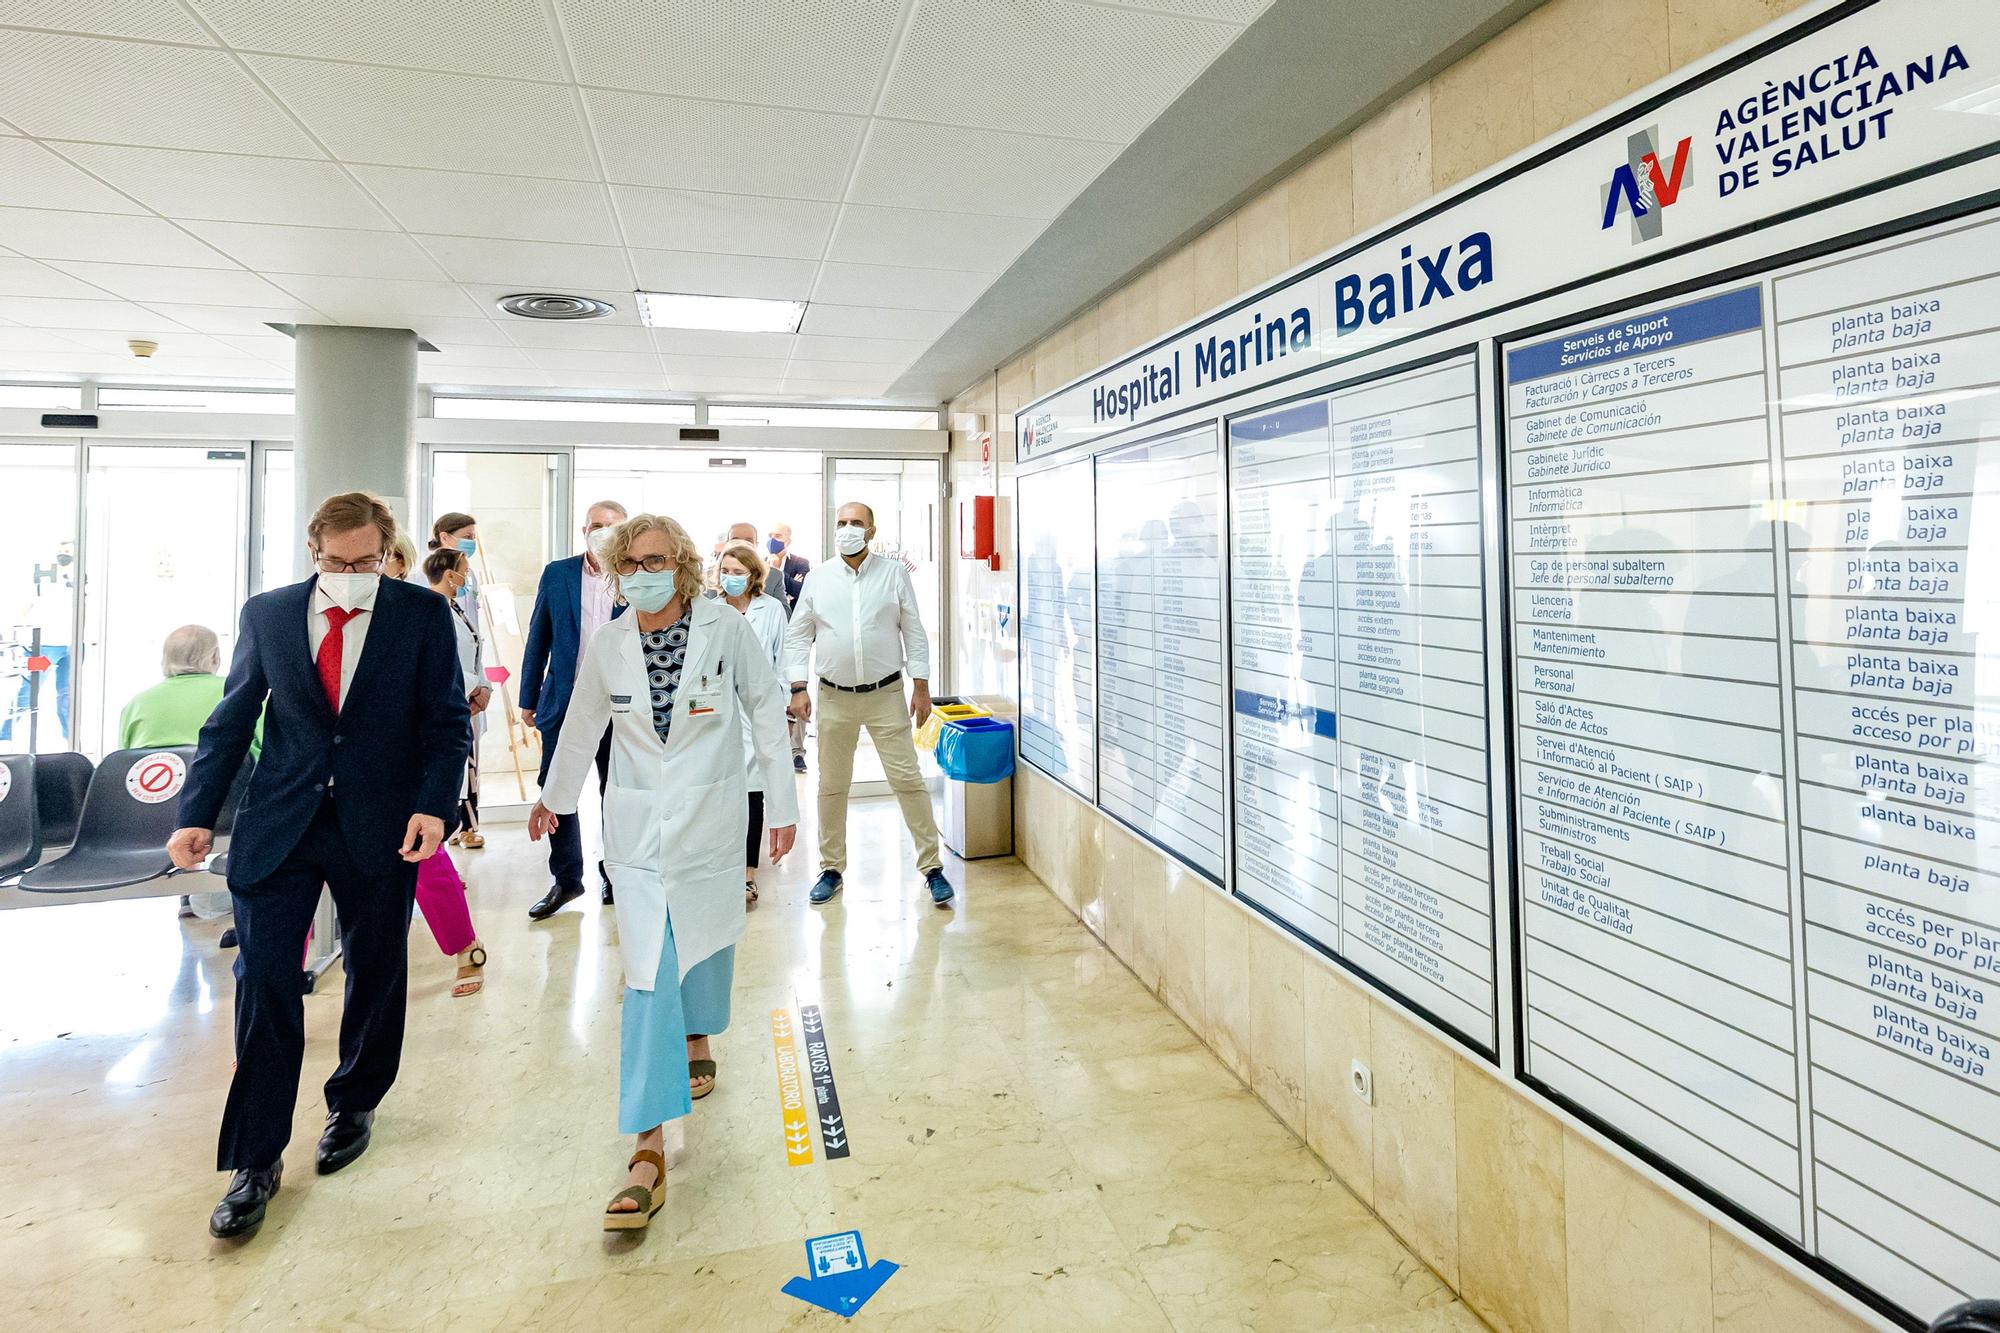 El Coonseller de sanidad visita el Hospital de La Vila para presentar las obras de ampliación que tienen una duración estimada de 30 meses